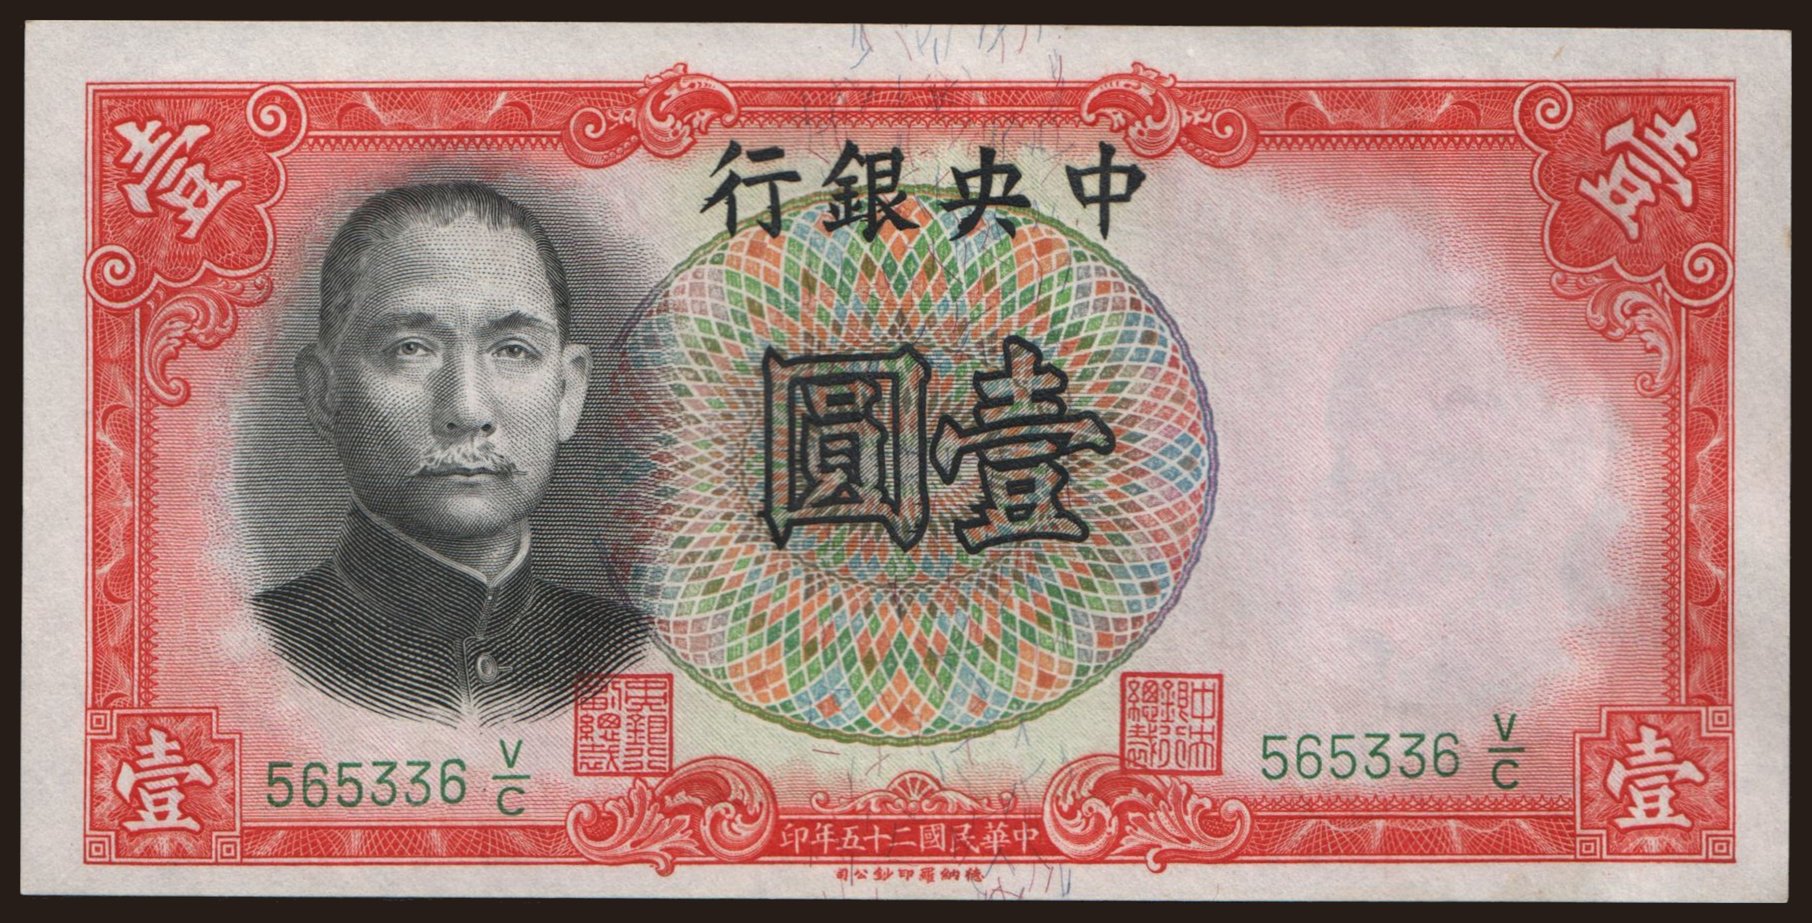 Central Bank of China, 1 yuan, 1936